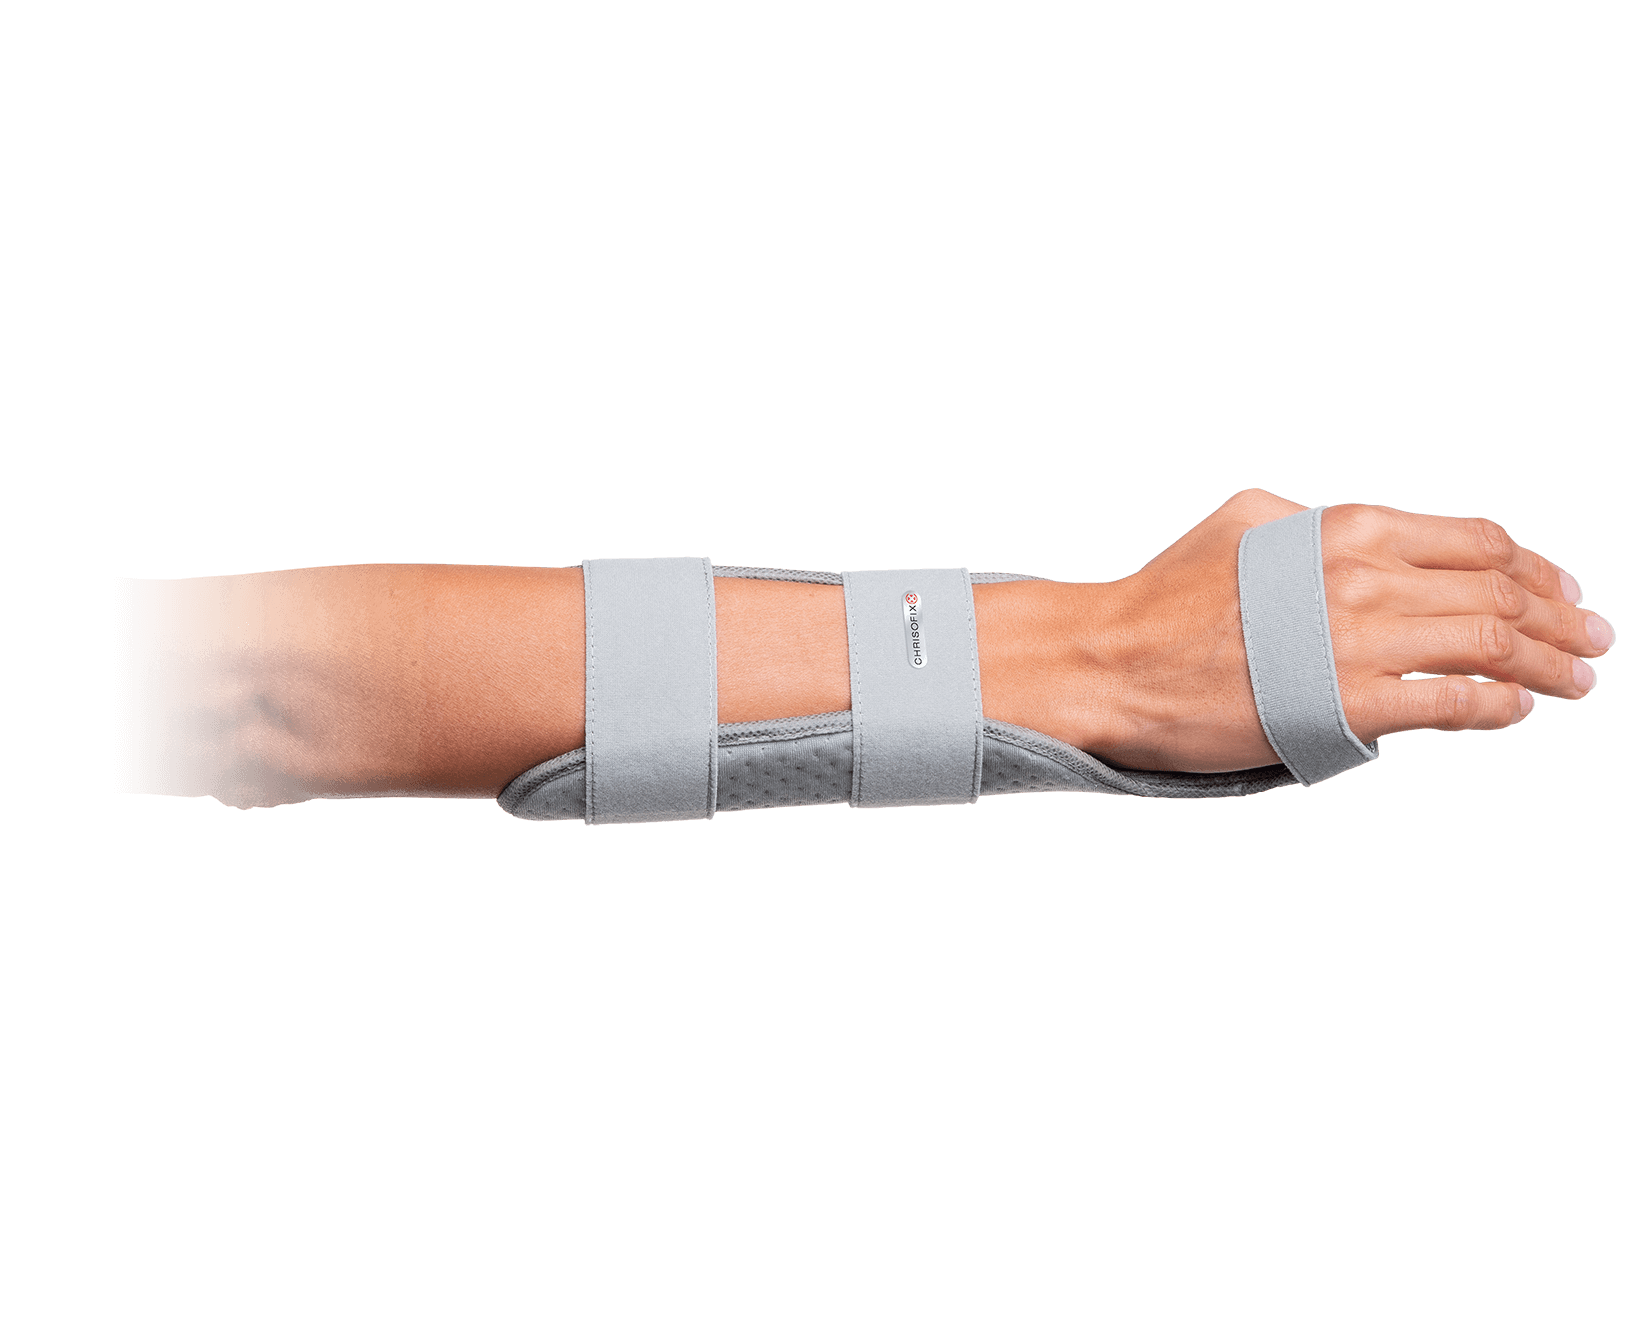 Volar wrist orthosis